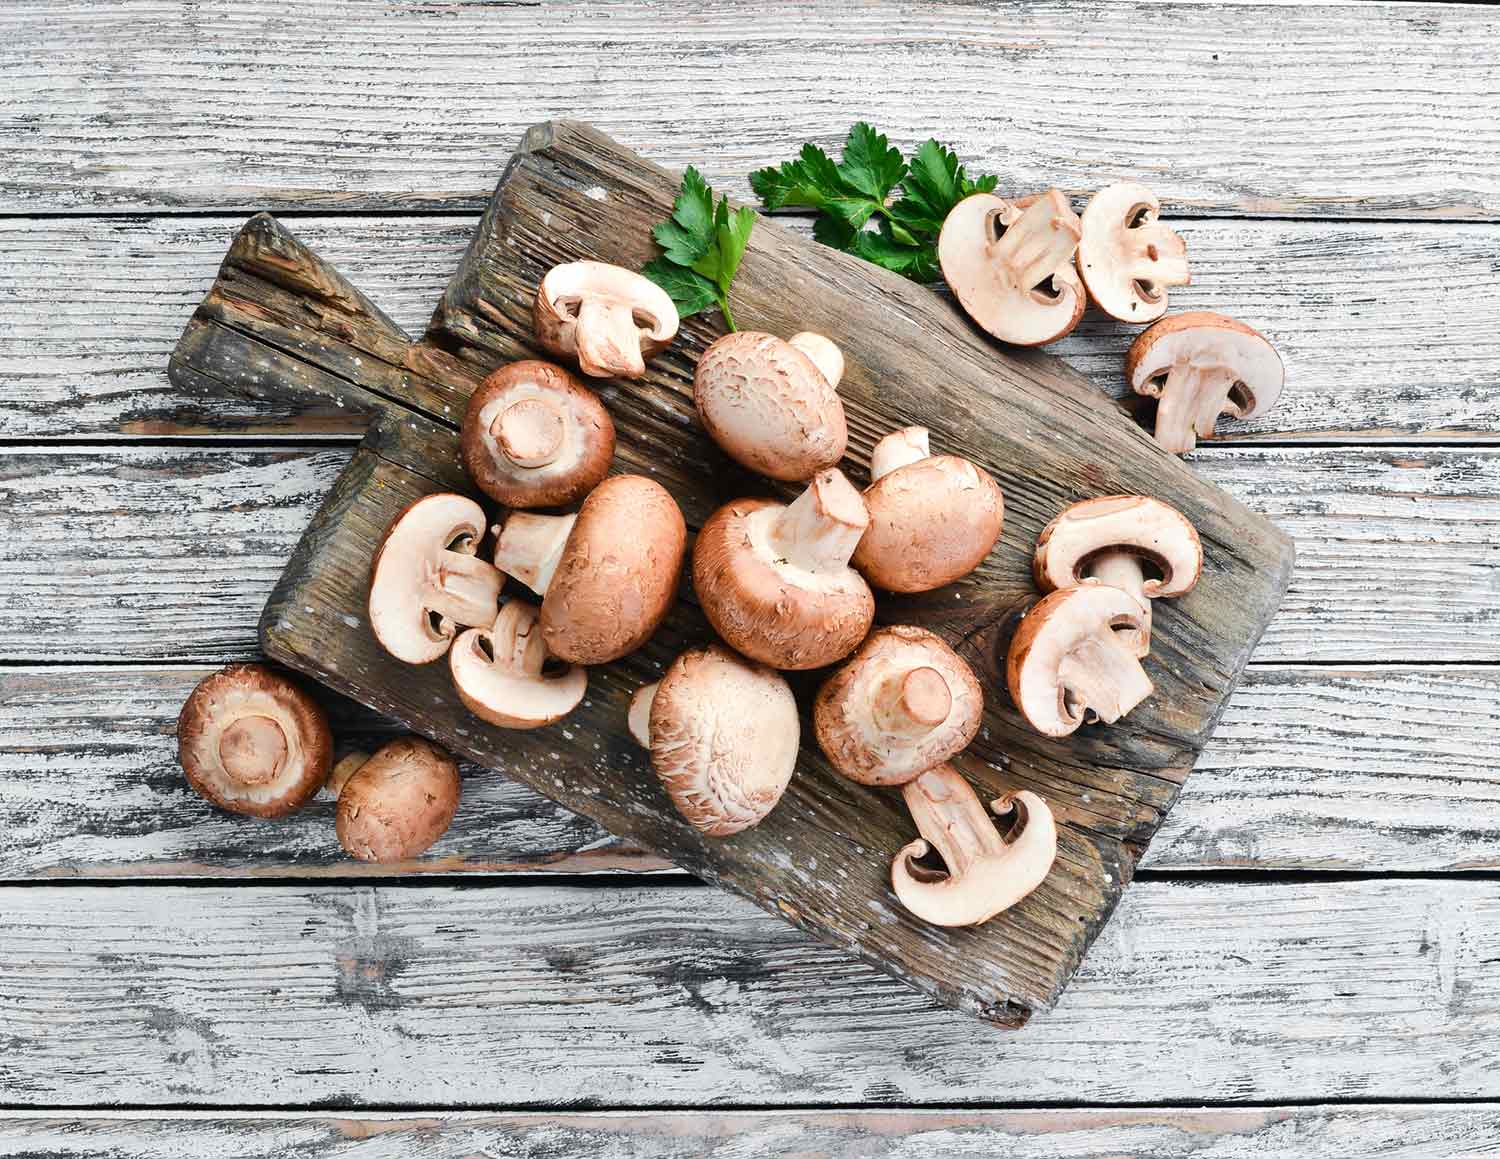 Cremini mushrooms on a wooden cutting board.